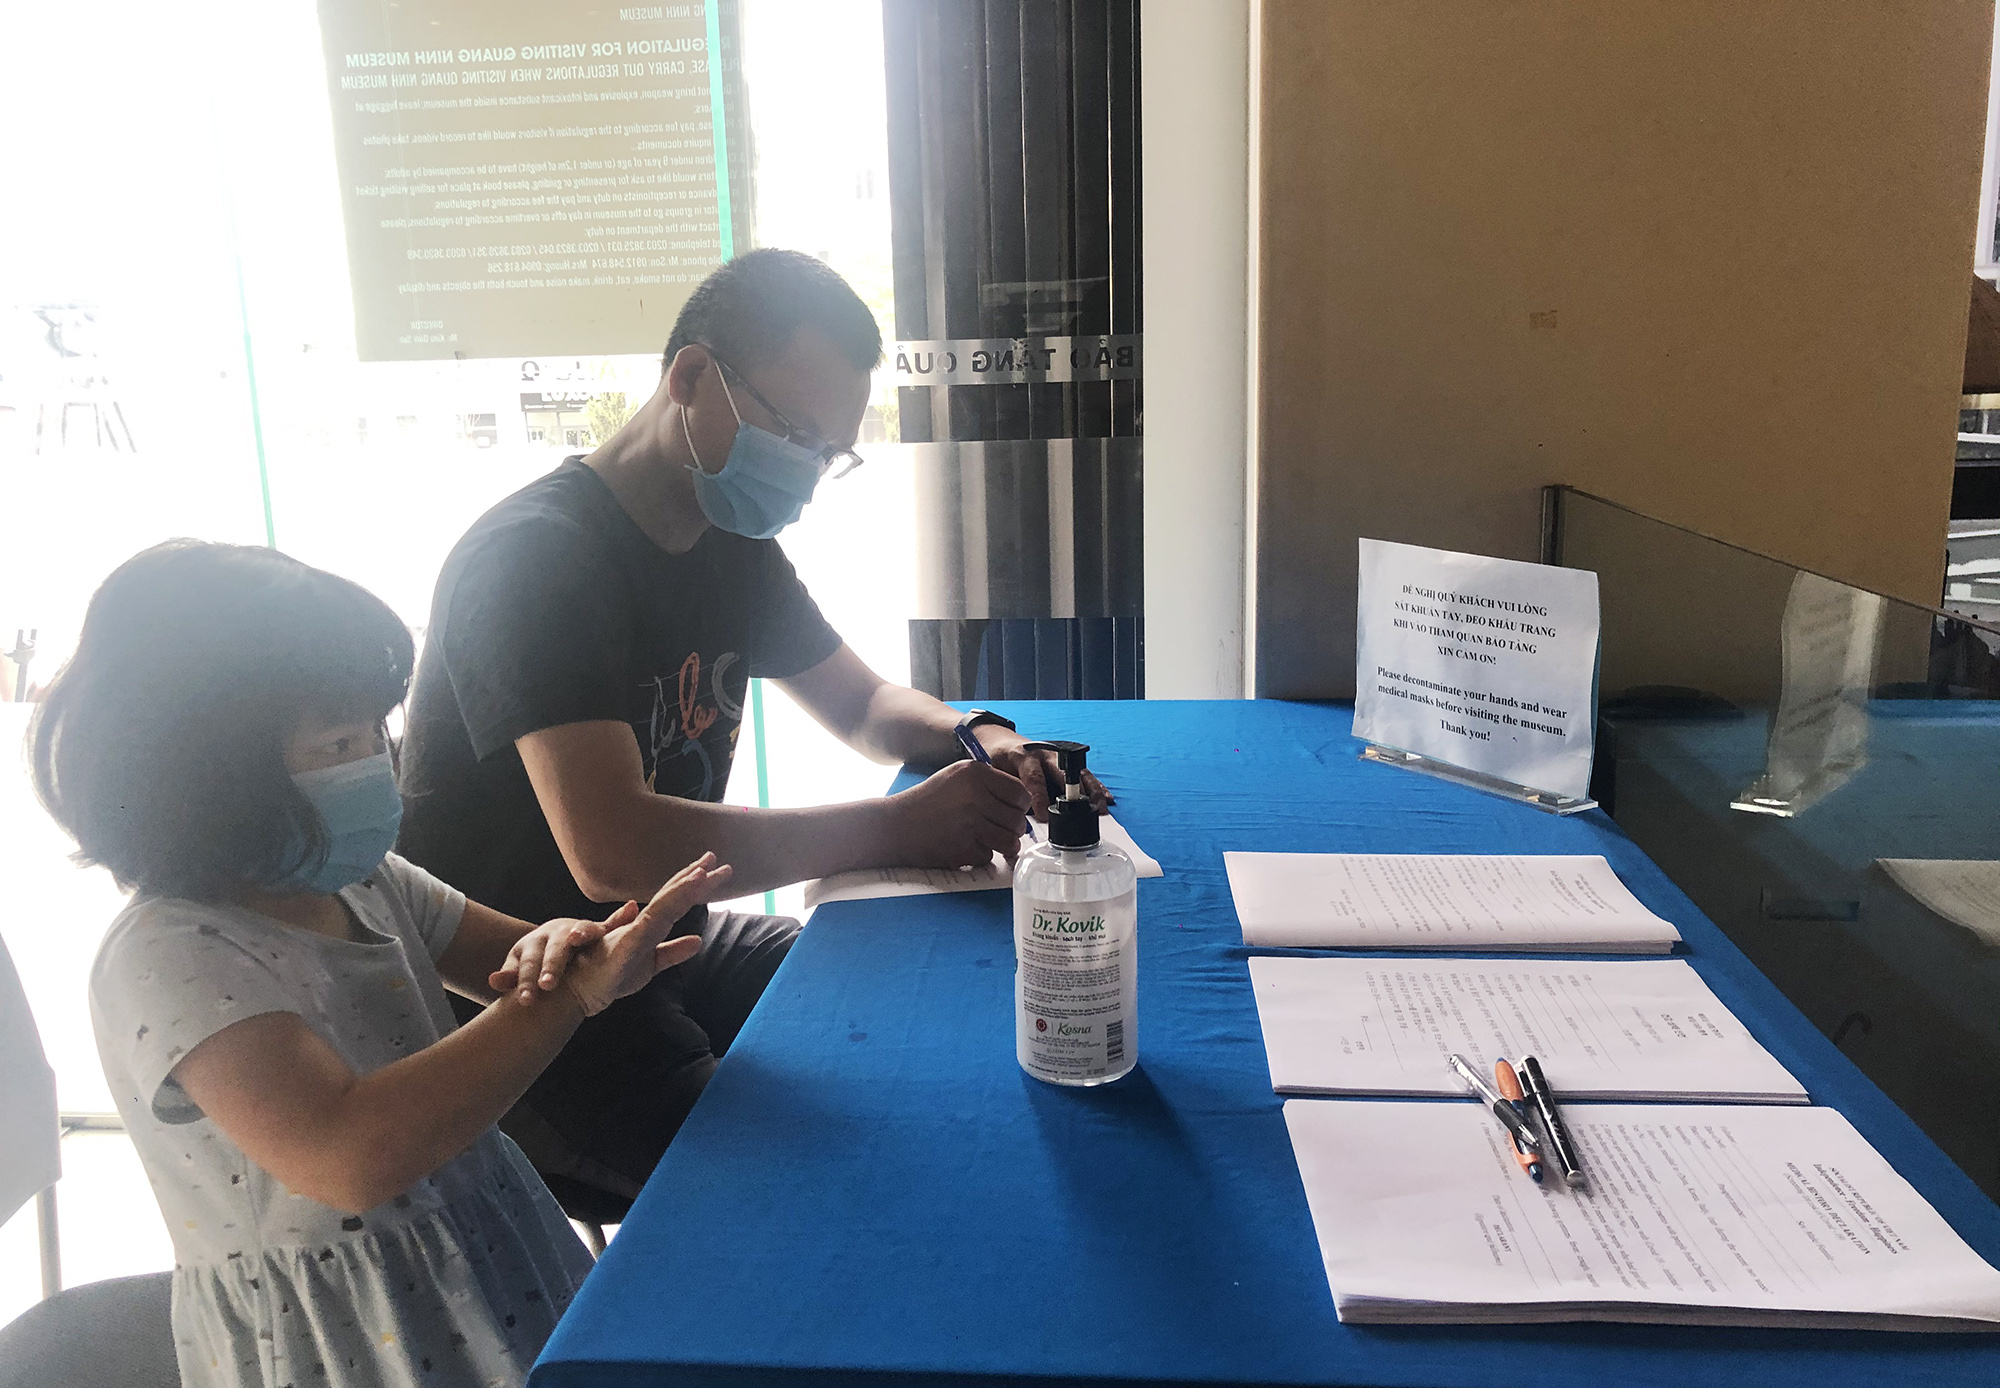 Tất cả khách tới tham quan tại Bảo tàng Quảng Ninh đều được khai báo thông tin y tế và thực hiện kiểm tra y tế, đeo khẩu trang trước khu vào tham quan tại các khu vực bên trong.